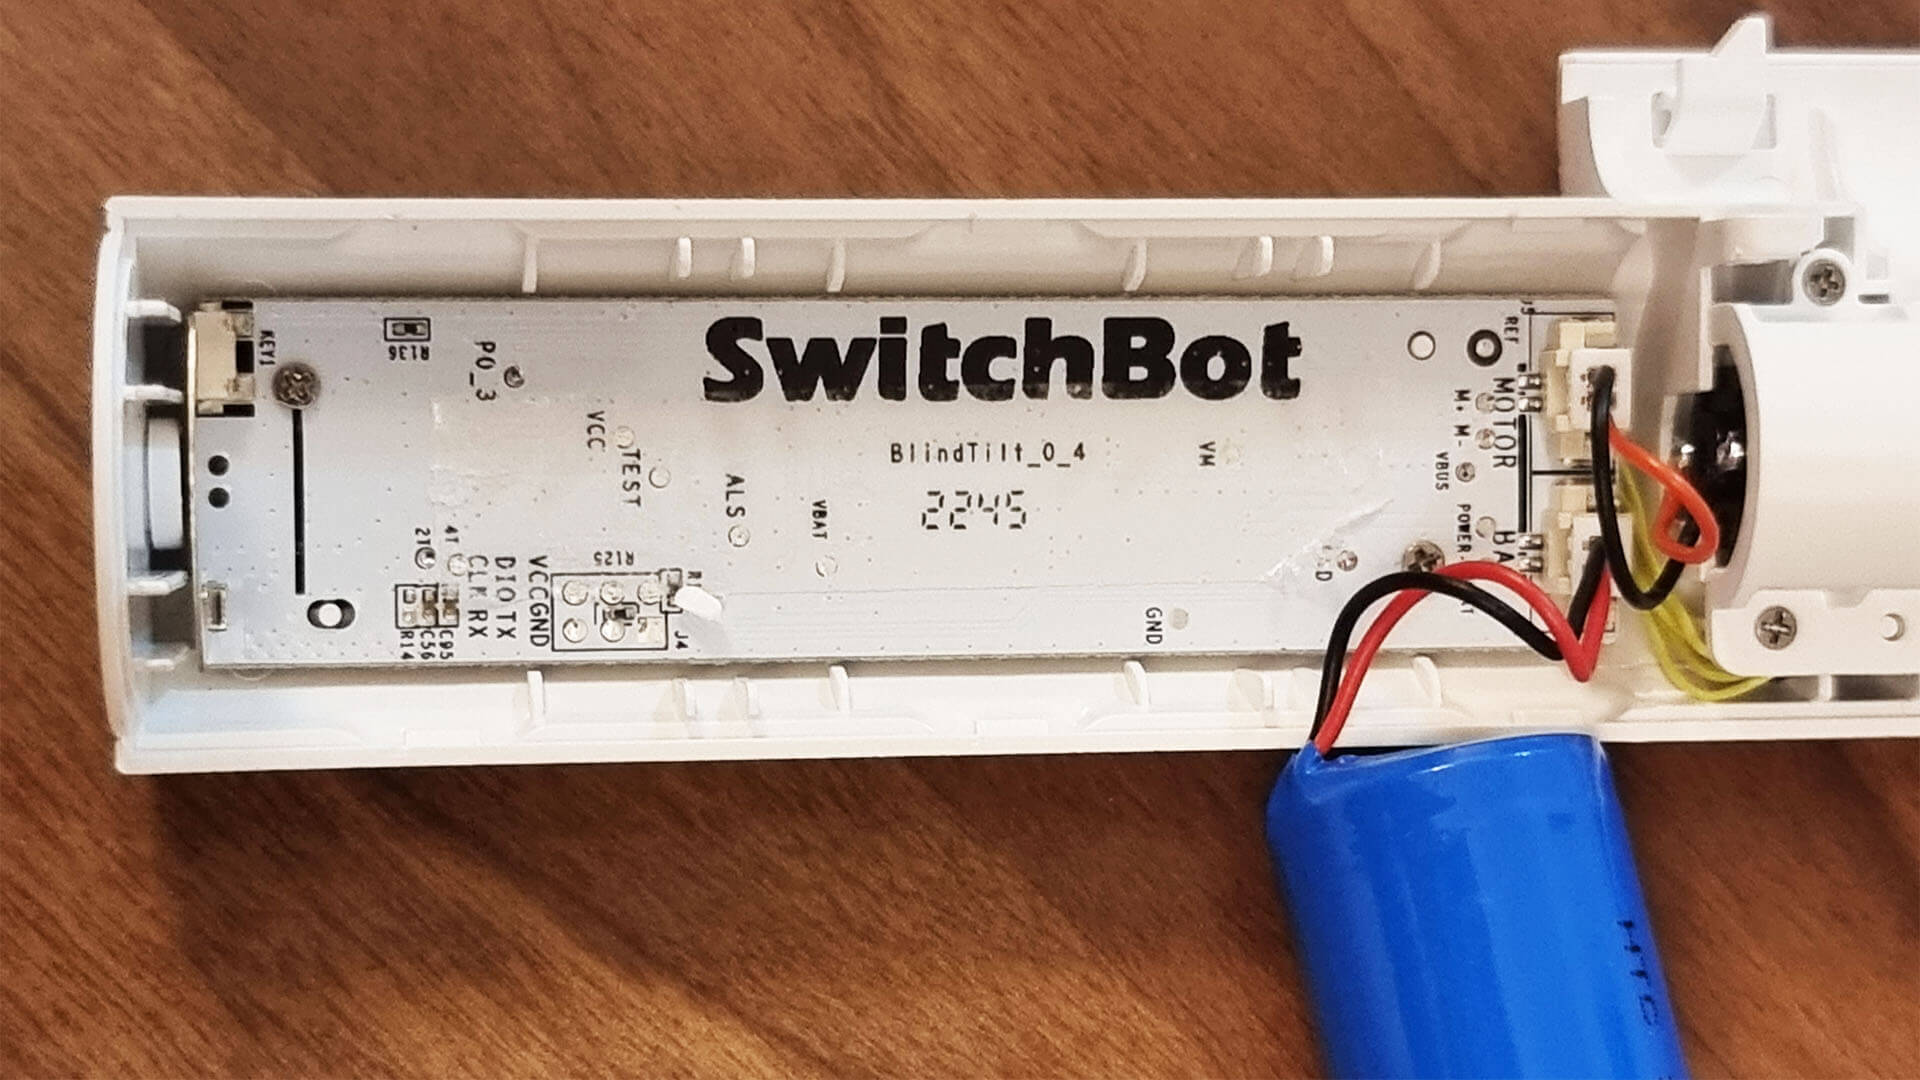 SwitchBot Blind Tilt Review Main PCB